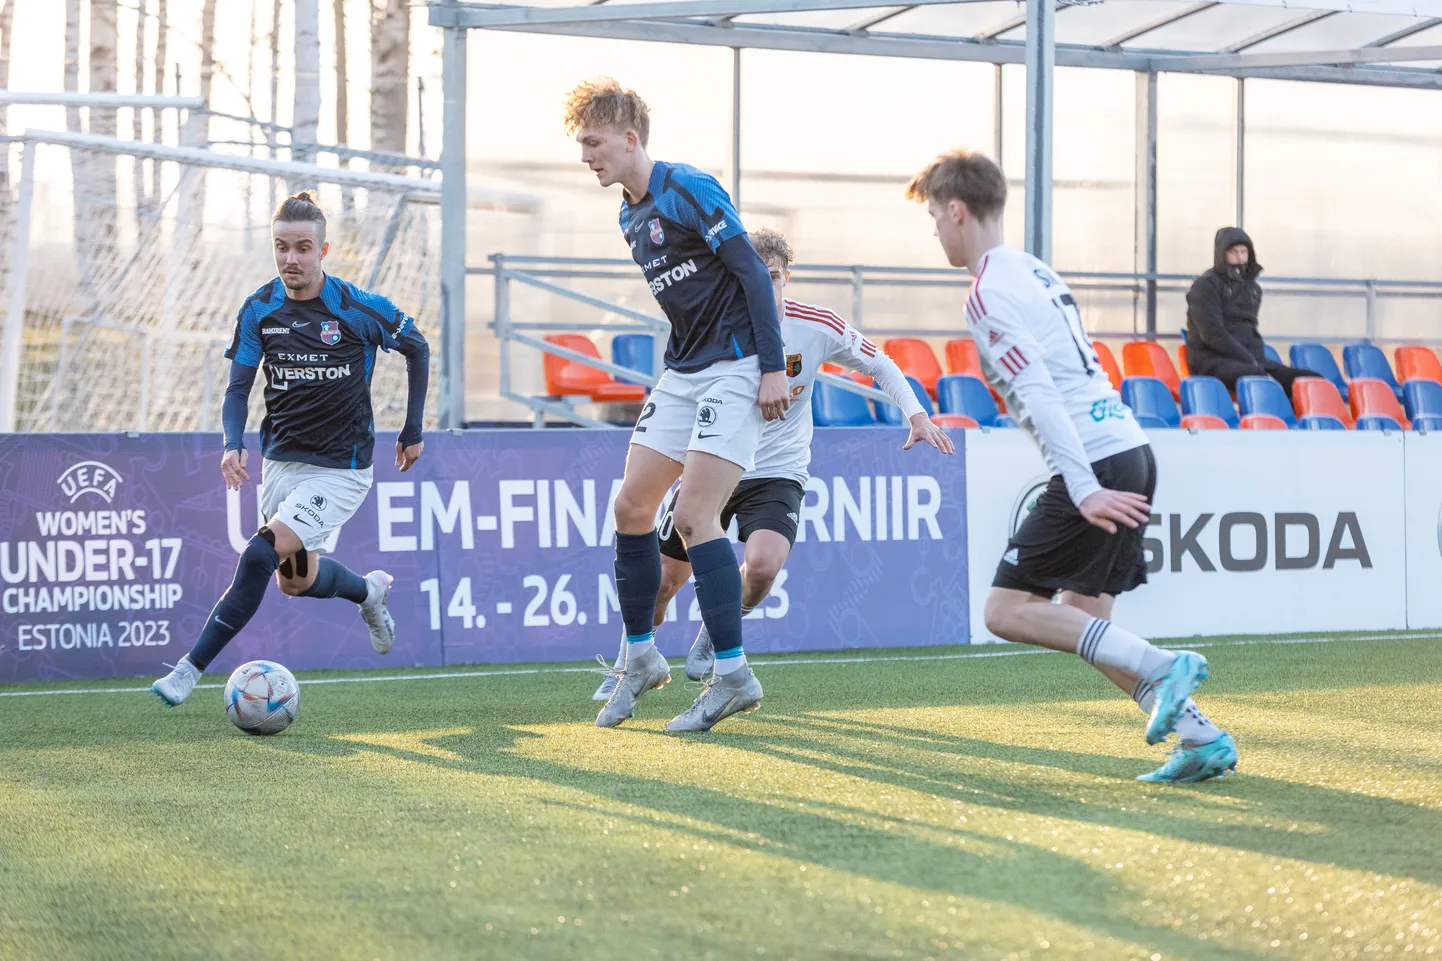 Paide Linnameeskond U21 esimese värava sepistasid Herol Riiberg (vasakul) ja Simon Usar (paremal).